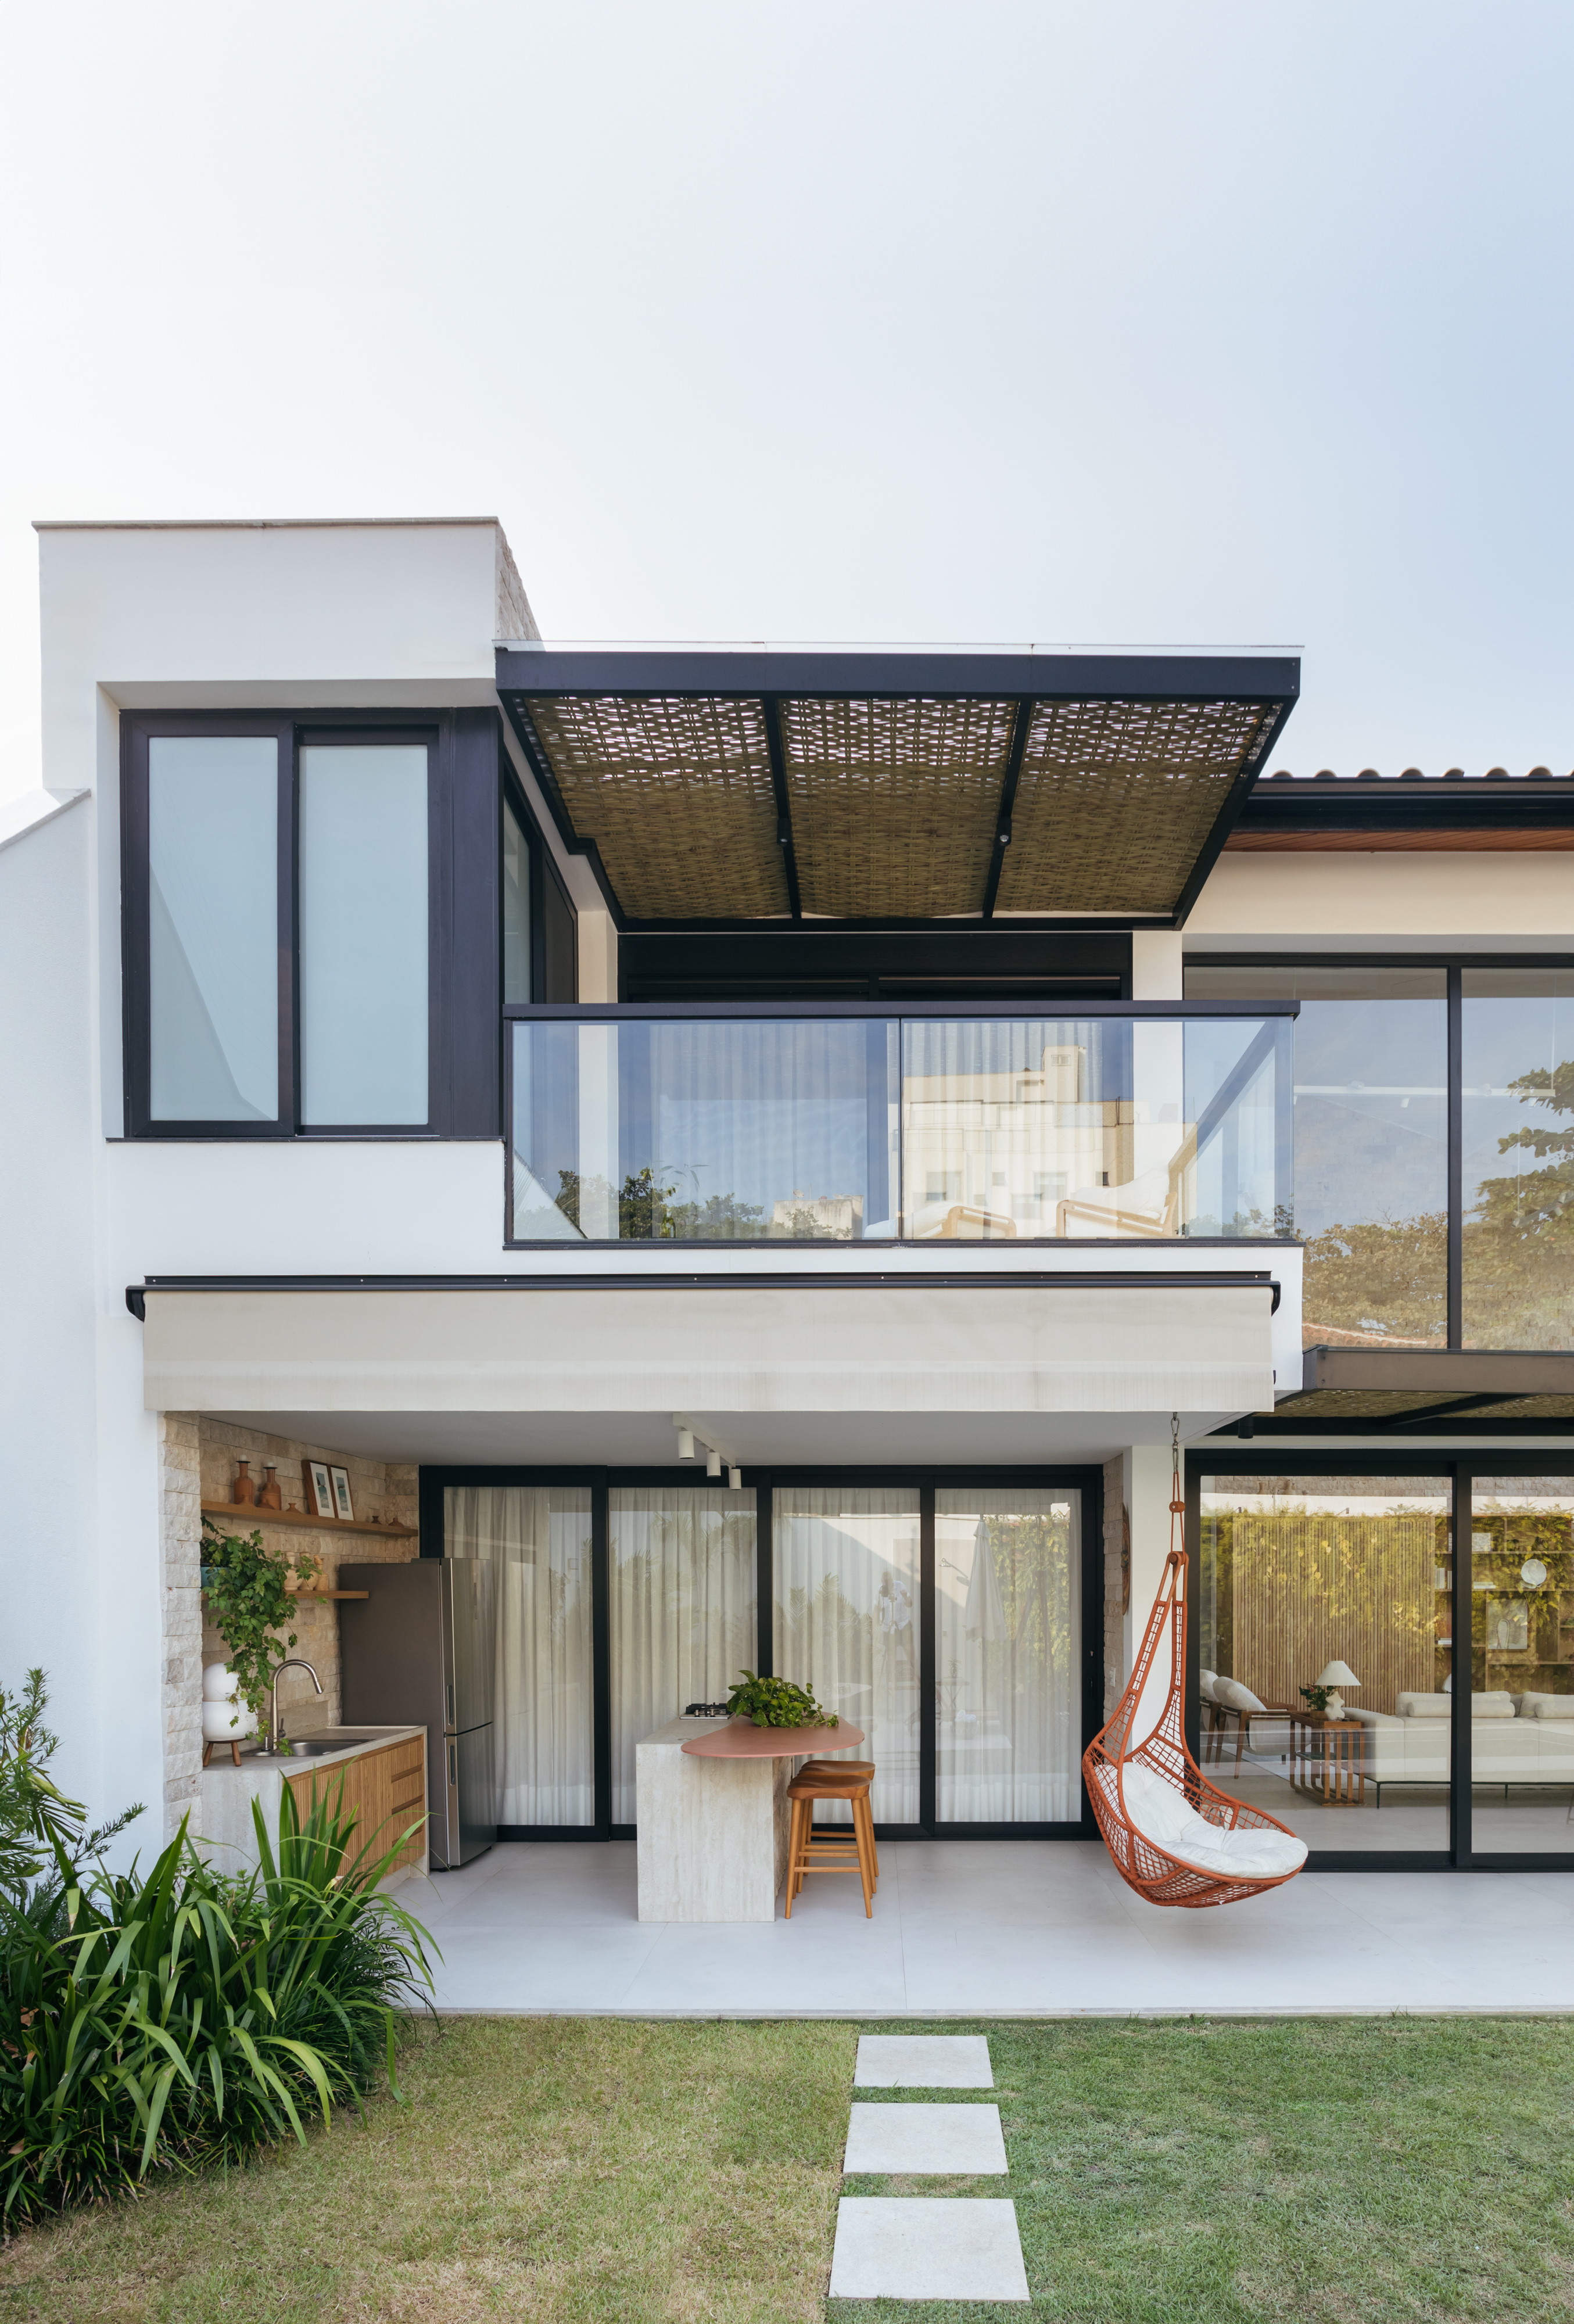 Pergolados com forro em fibras de bambu trançadas envolvem casa de 195 m². Projeto de Amanda Miranda. Na foto, fachada.